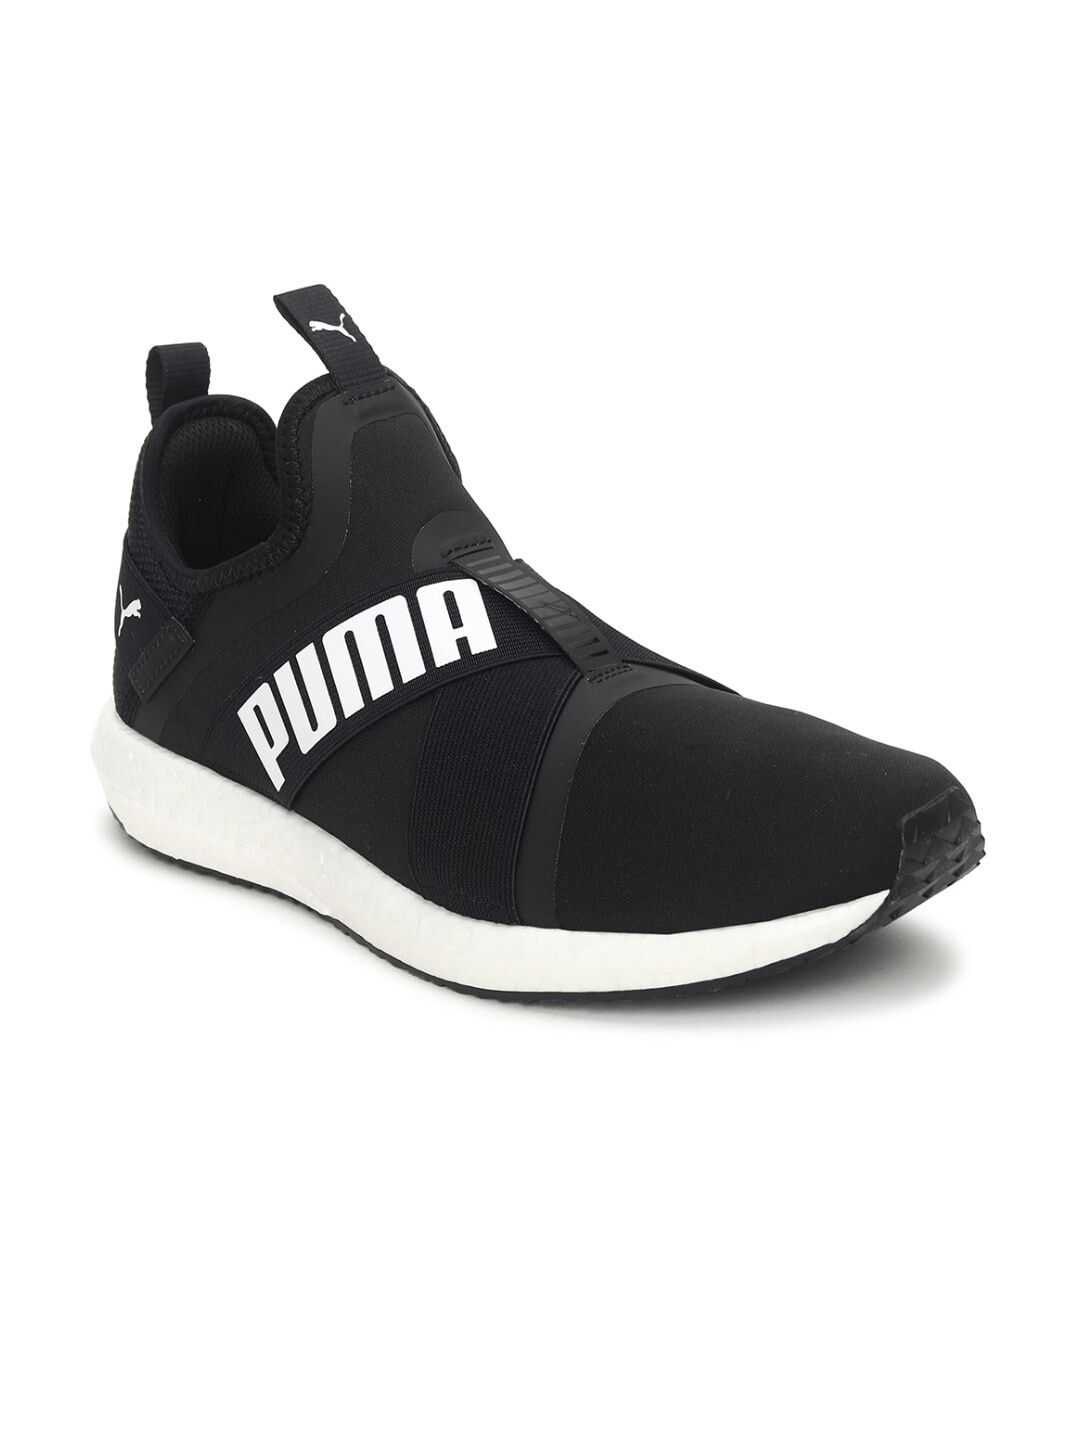 Puma Unisex Black & White Mega NRGY X v2 Running Shoes Price in India